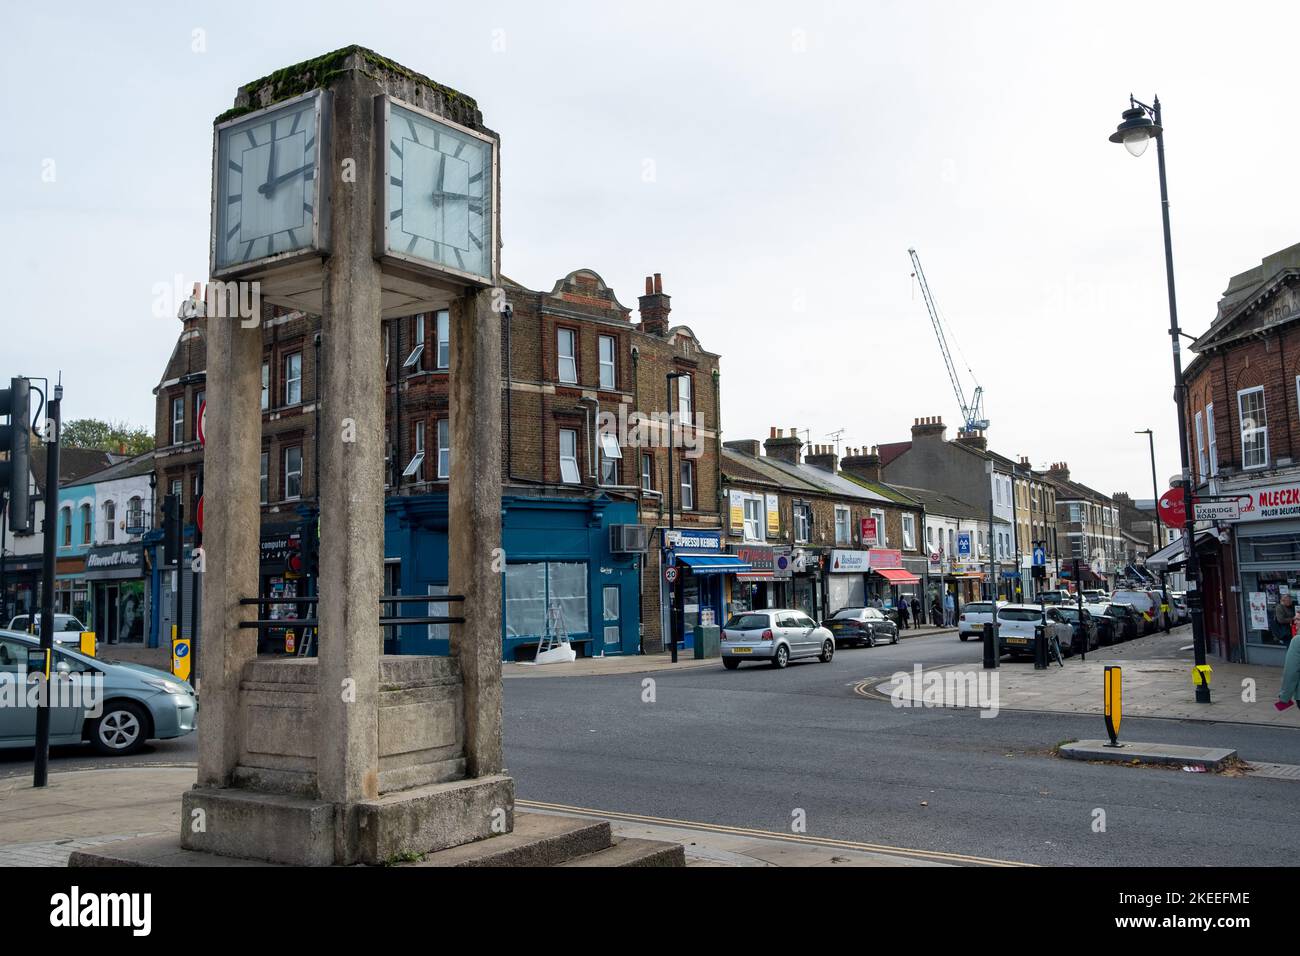 Londra - Novembre 2022: La Torre dell'Orologio su Uxbridge Road, un punto di riferimento storico nel centro di Hanwell-Ealing Foto Stock